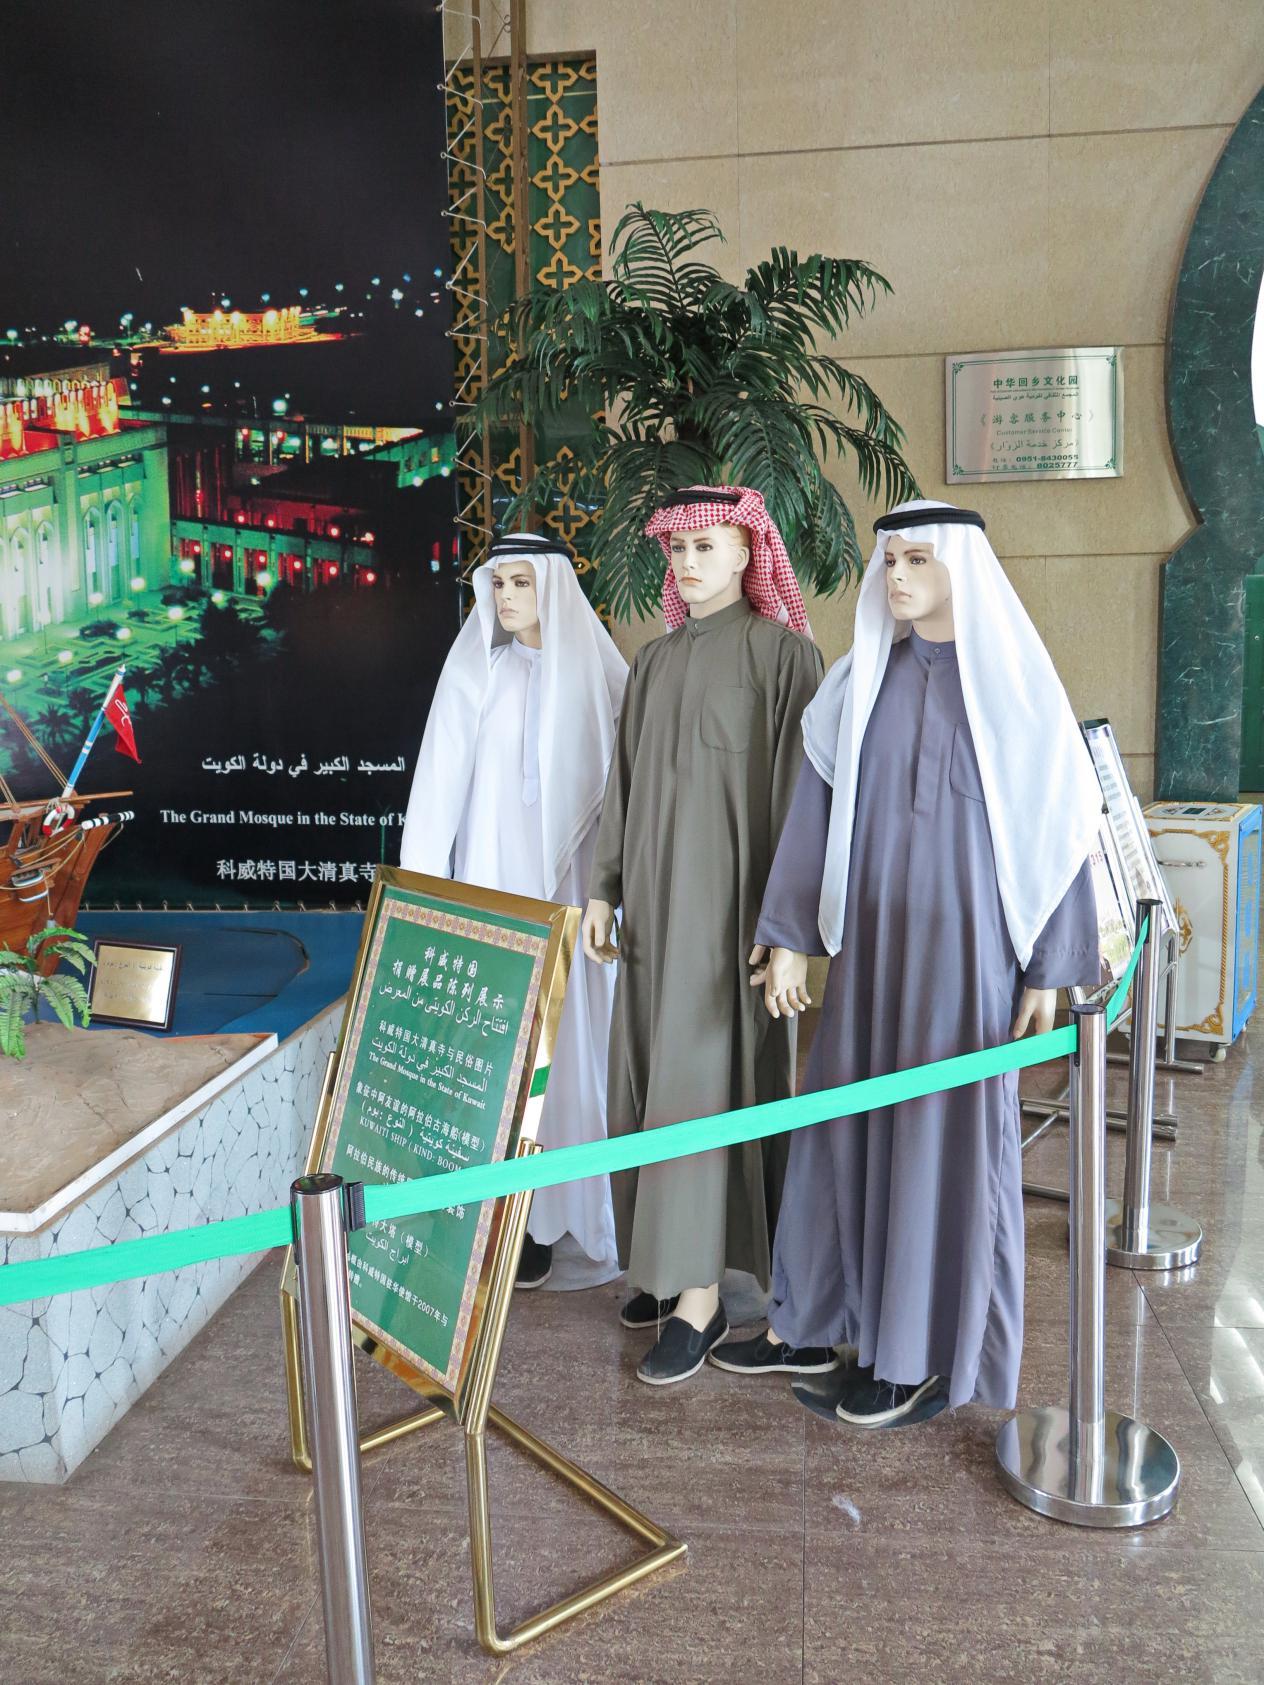 科威特赠送,象征中阿友谊的阿拉伯古海船(模型)和阿拉伯民族传统服饰.